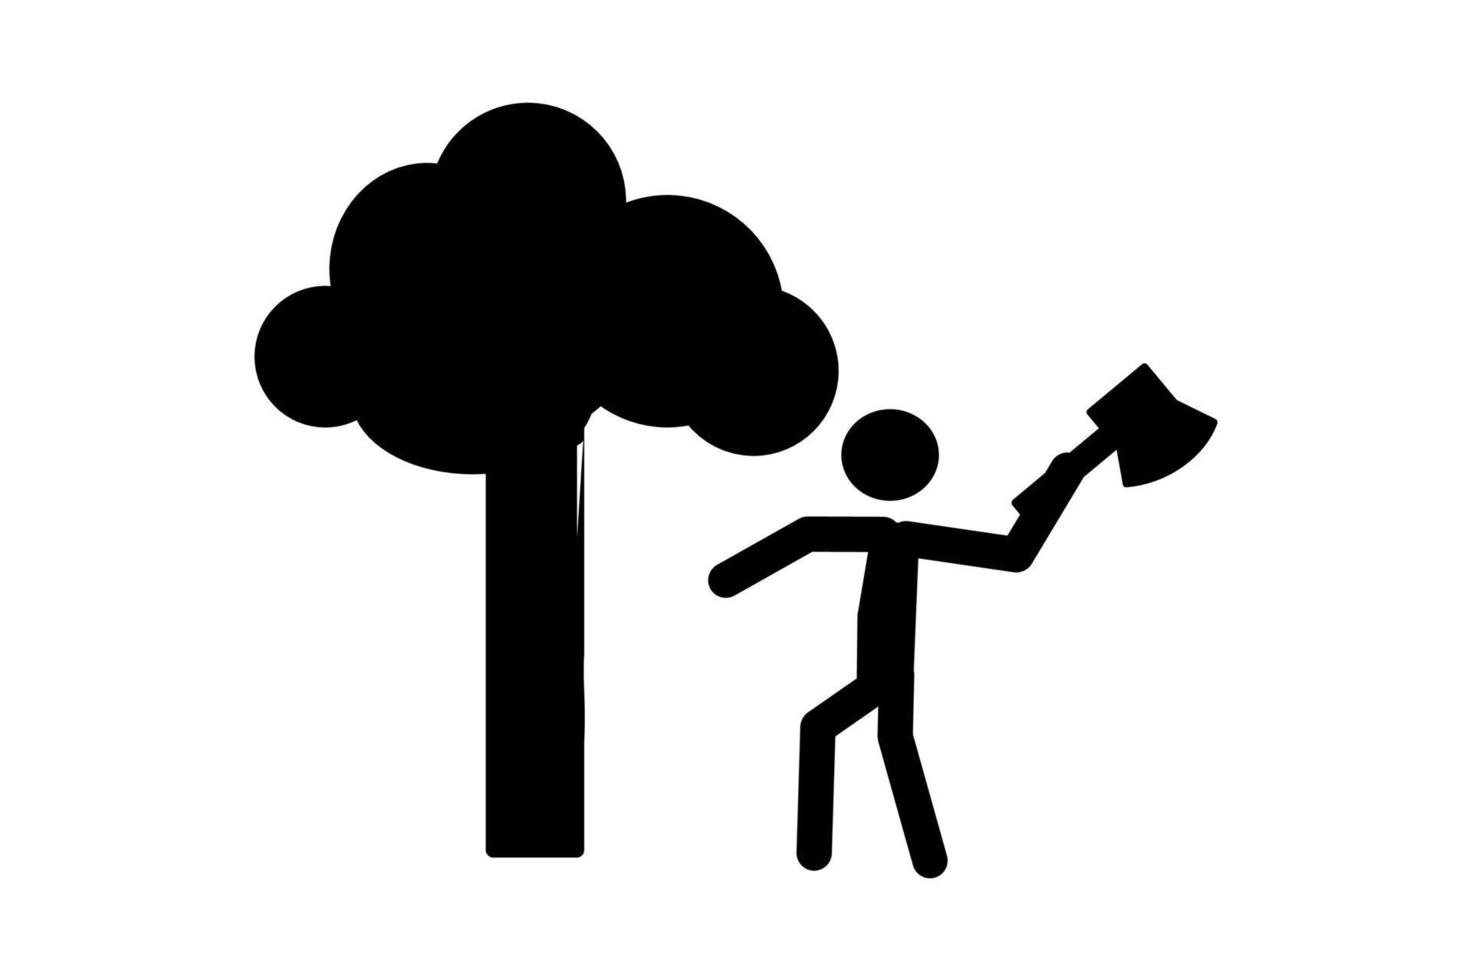 pessoas cortando árvores símbolo de devastação de madeira destruindo floresta ilustração vetorial simples pode ser usada para apresentação, interface do usuário, animação etc. vetor